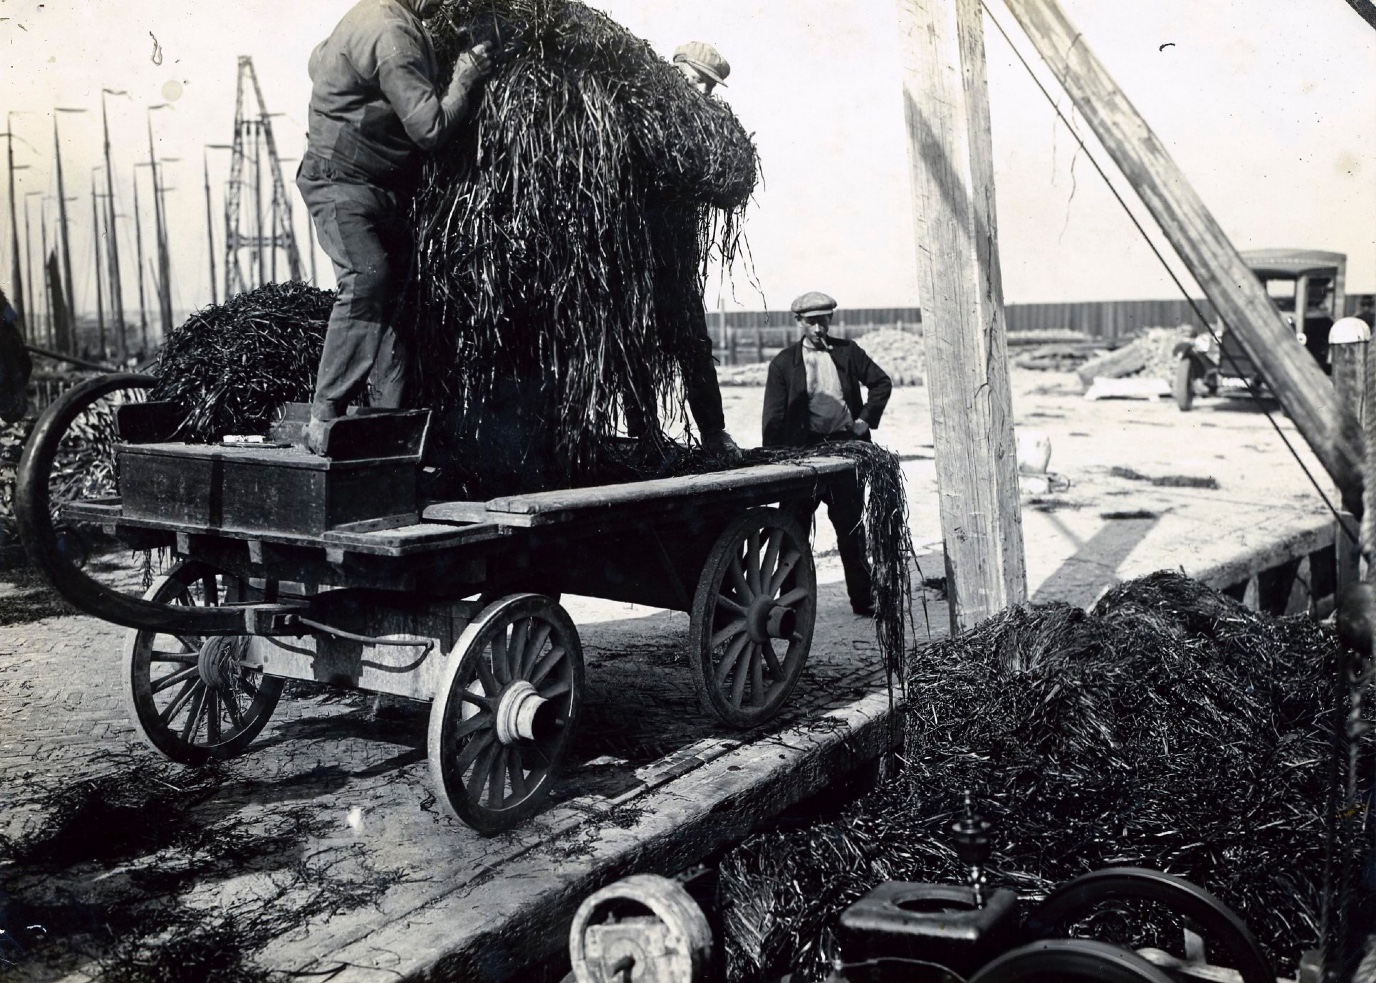 Lossen van gemaaid zeegras in de haven van den oever 14 juli 1928Unloading of seagras